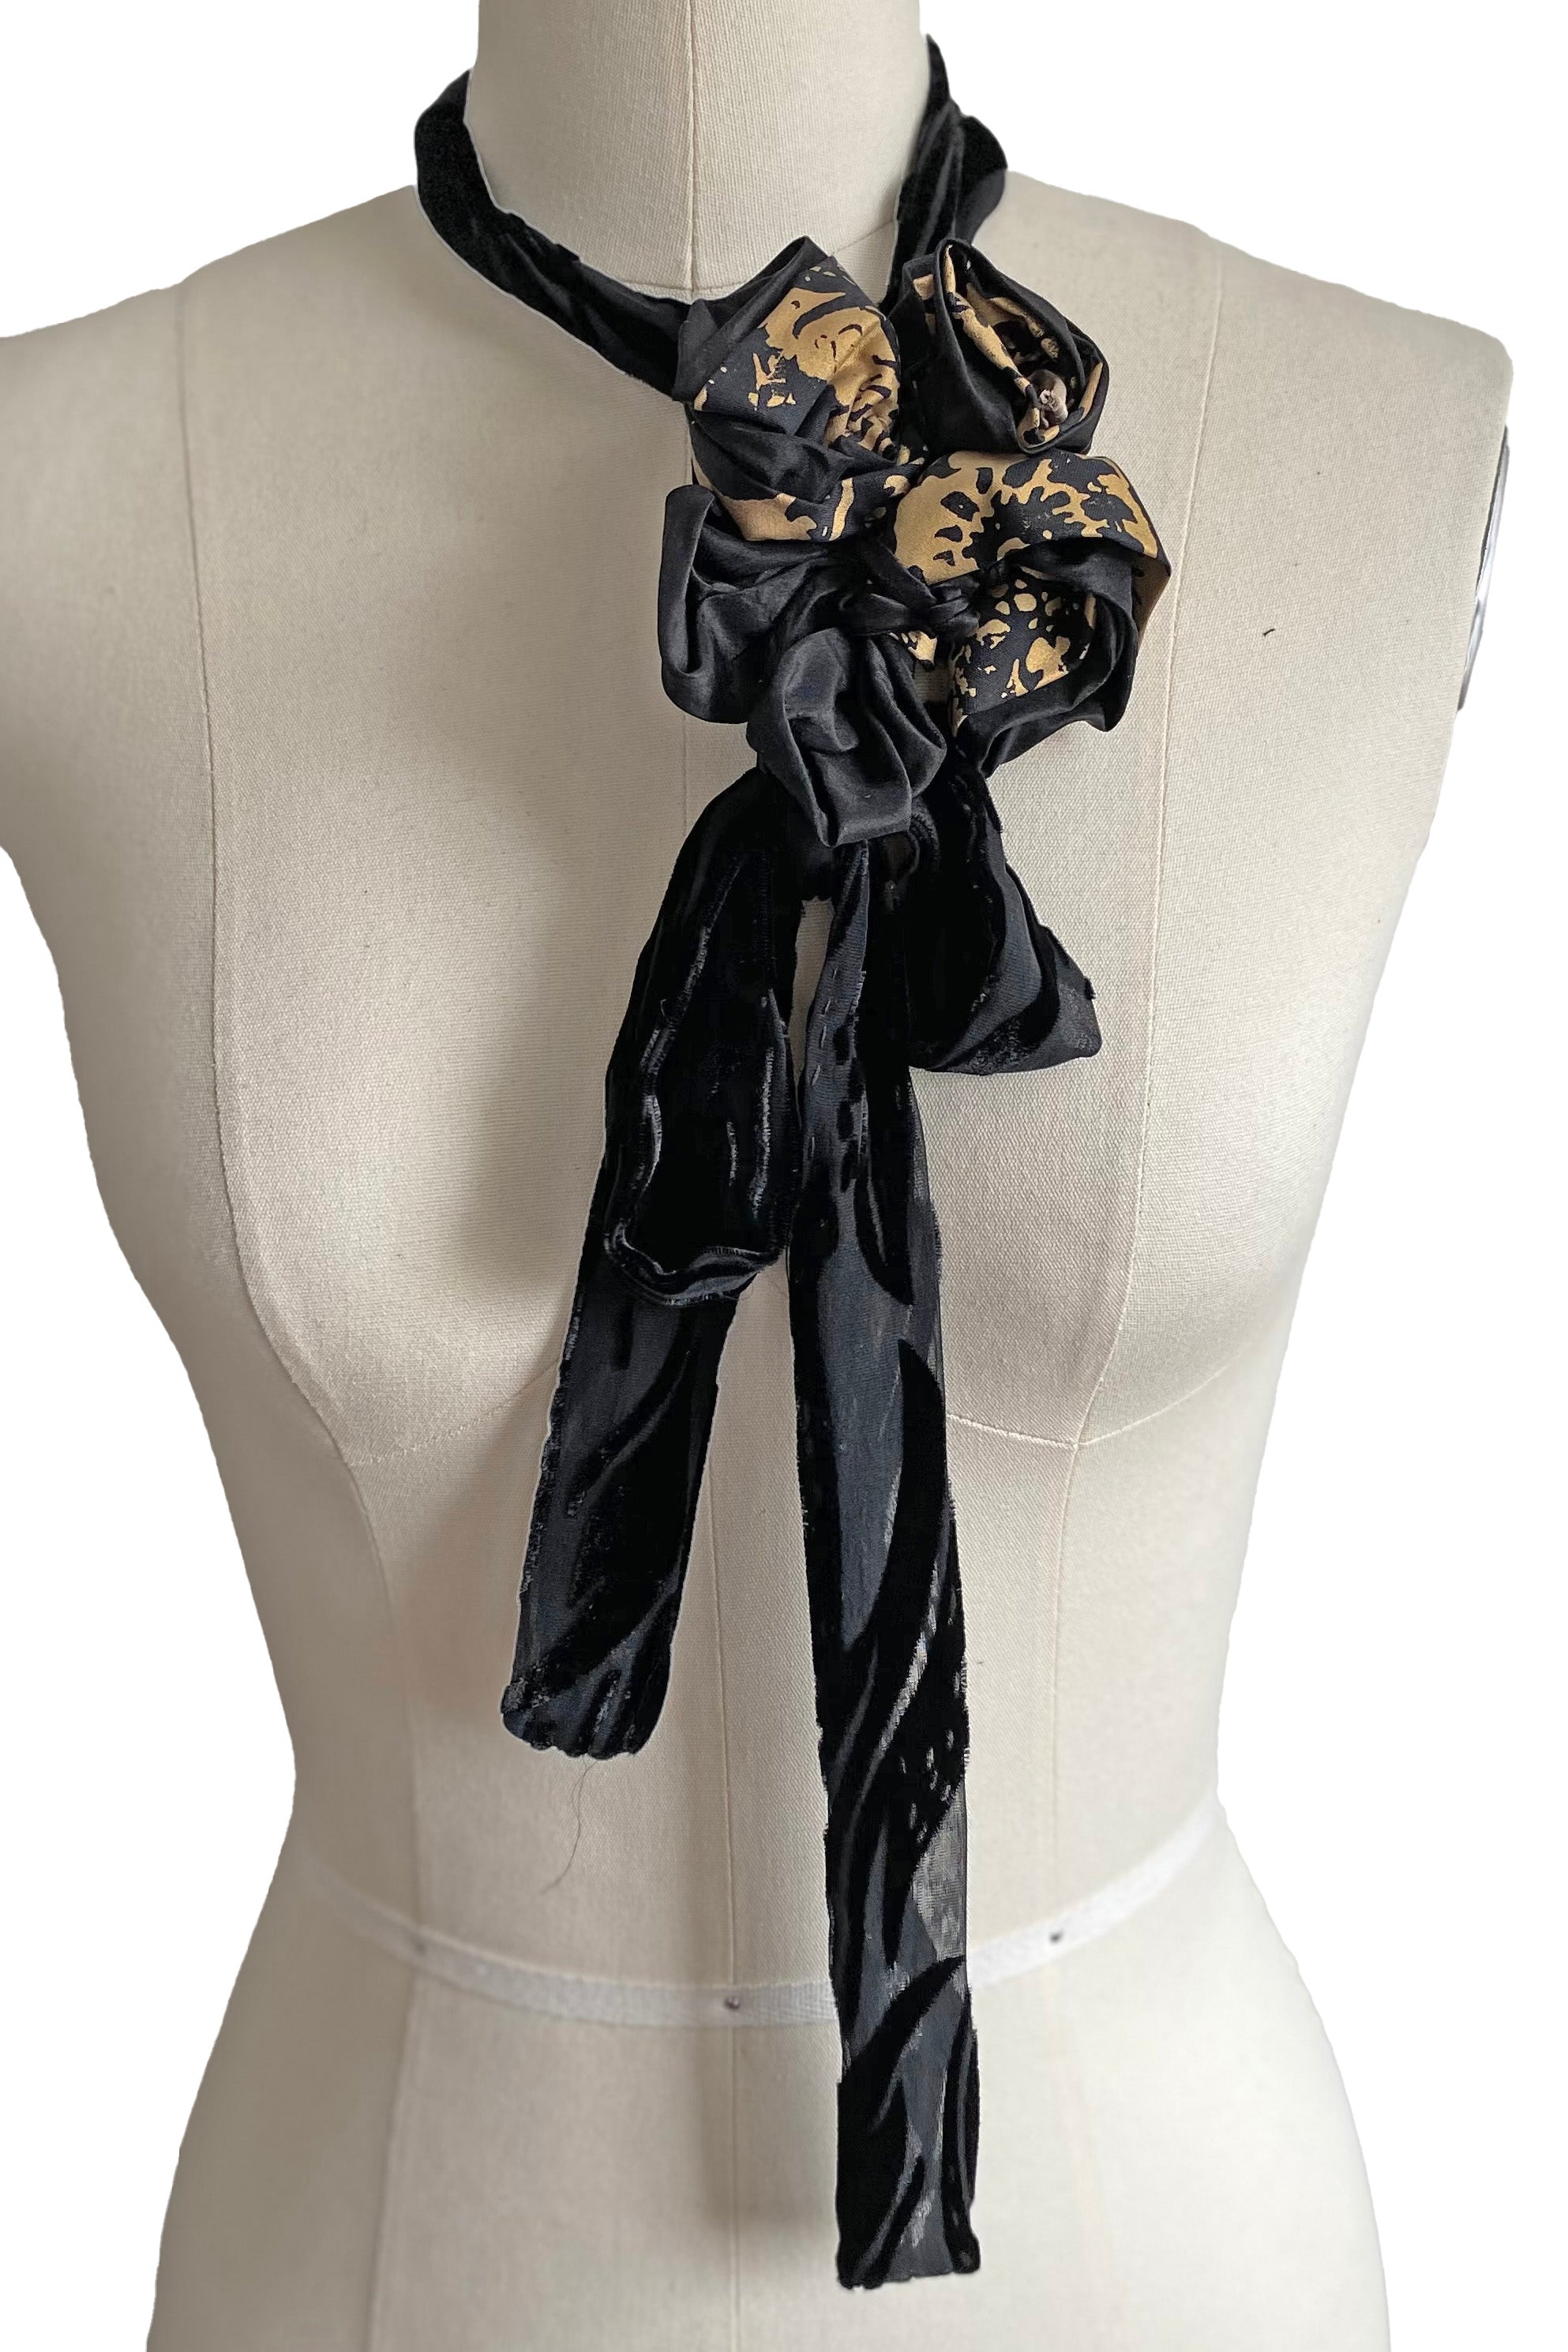 Adriana Silk Bolo Scarf - Black & Gold Printed Flower w/ Black Velvet Tie